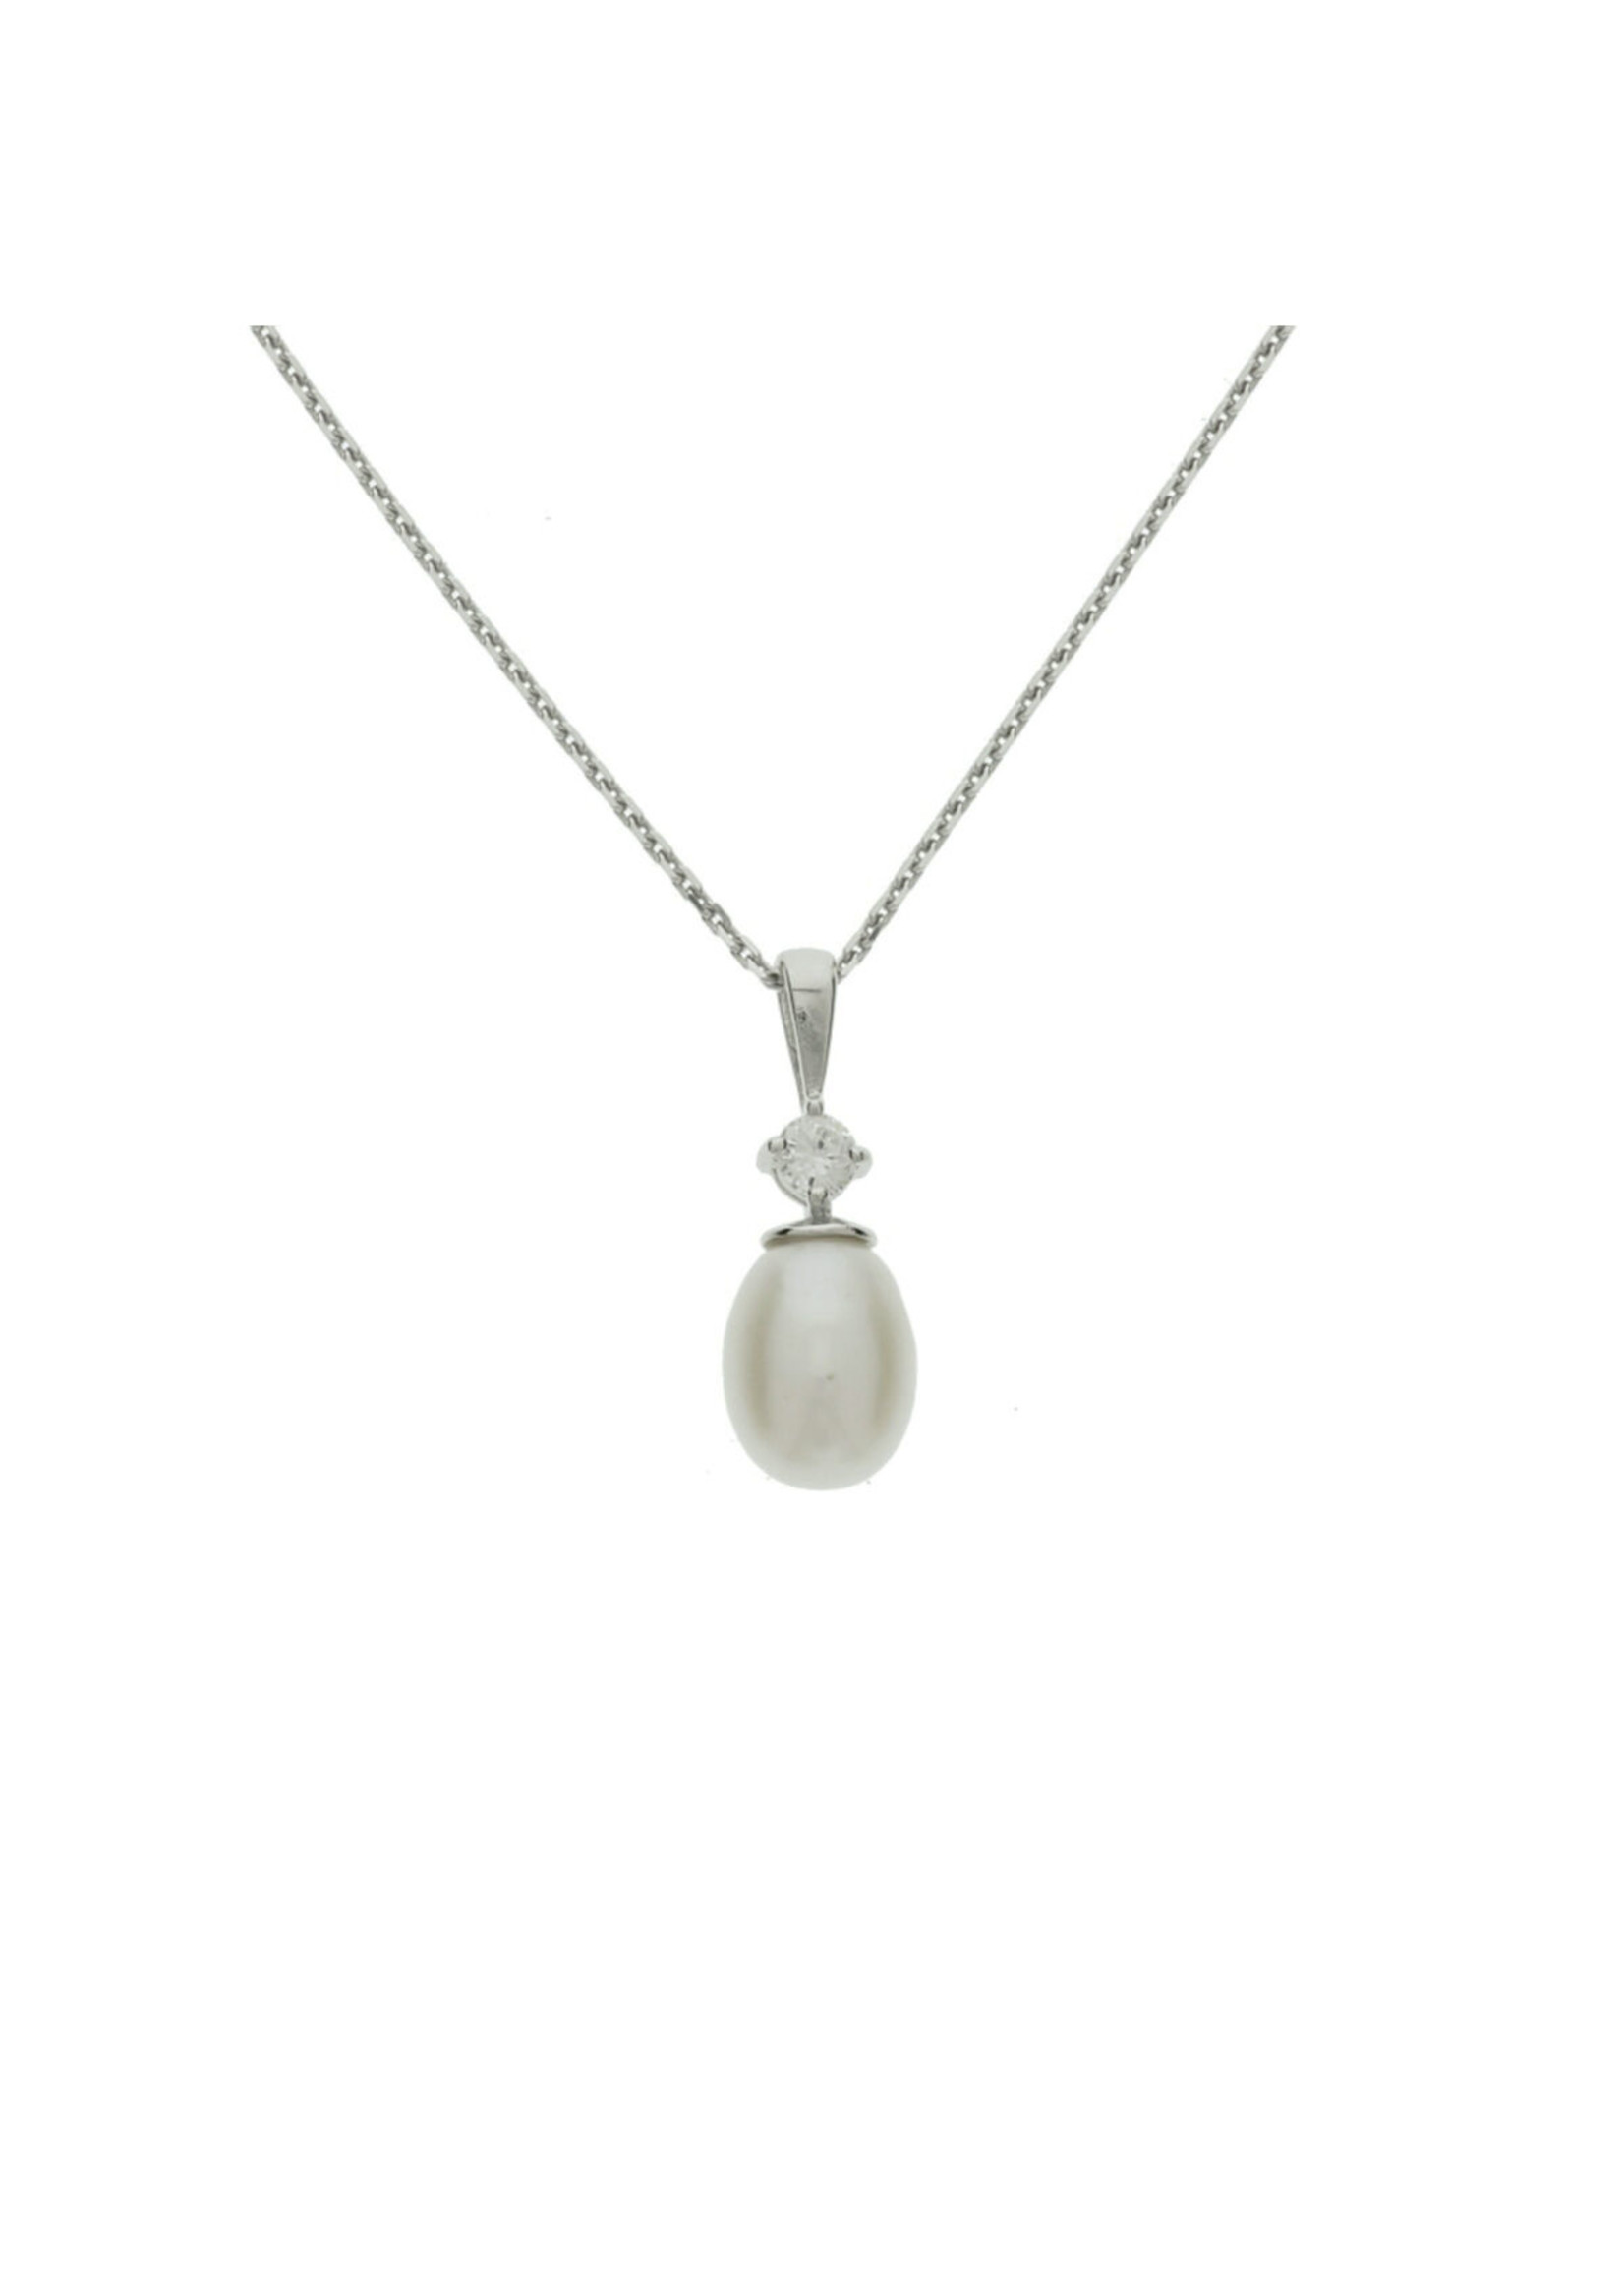 Cataleya jewels Zilveren collier parel 41 + 4 cm